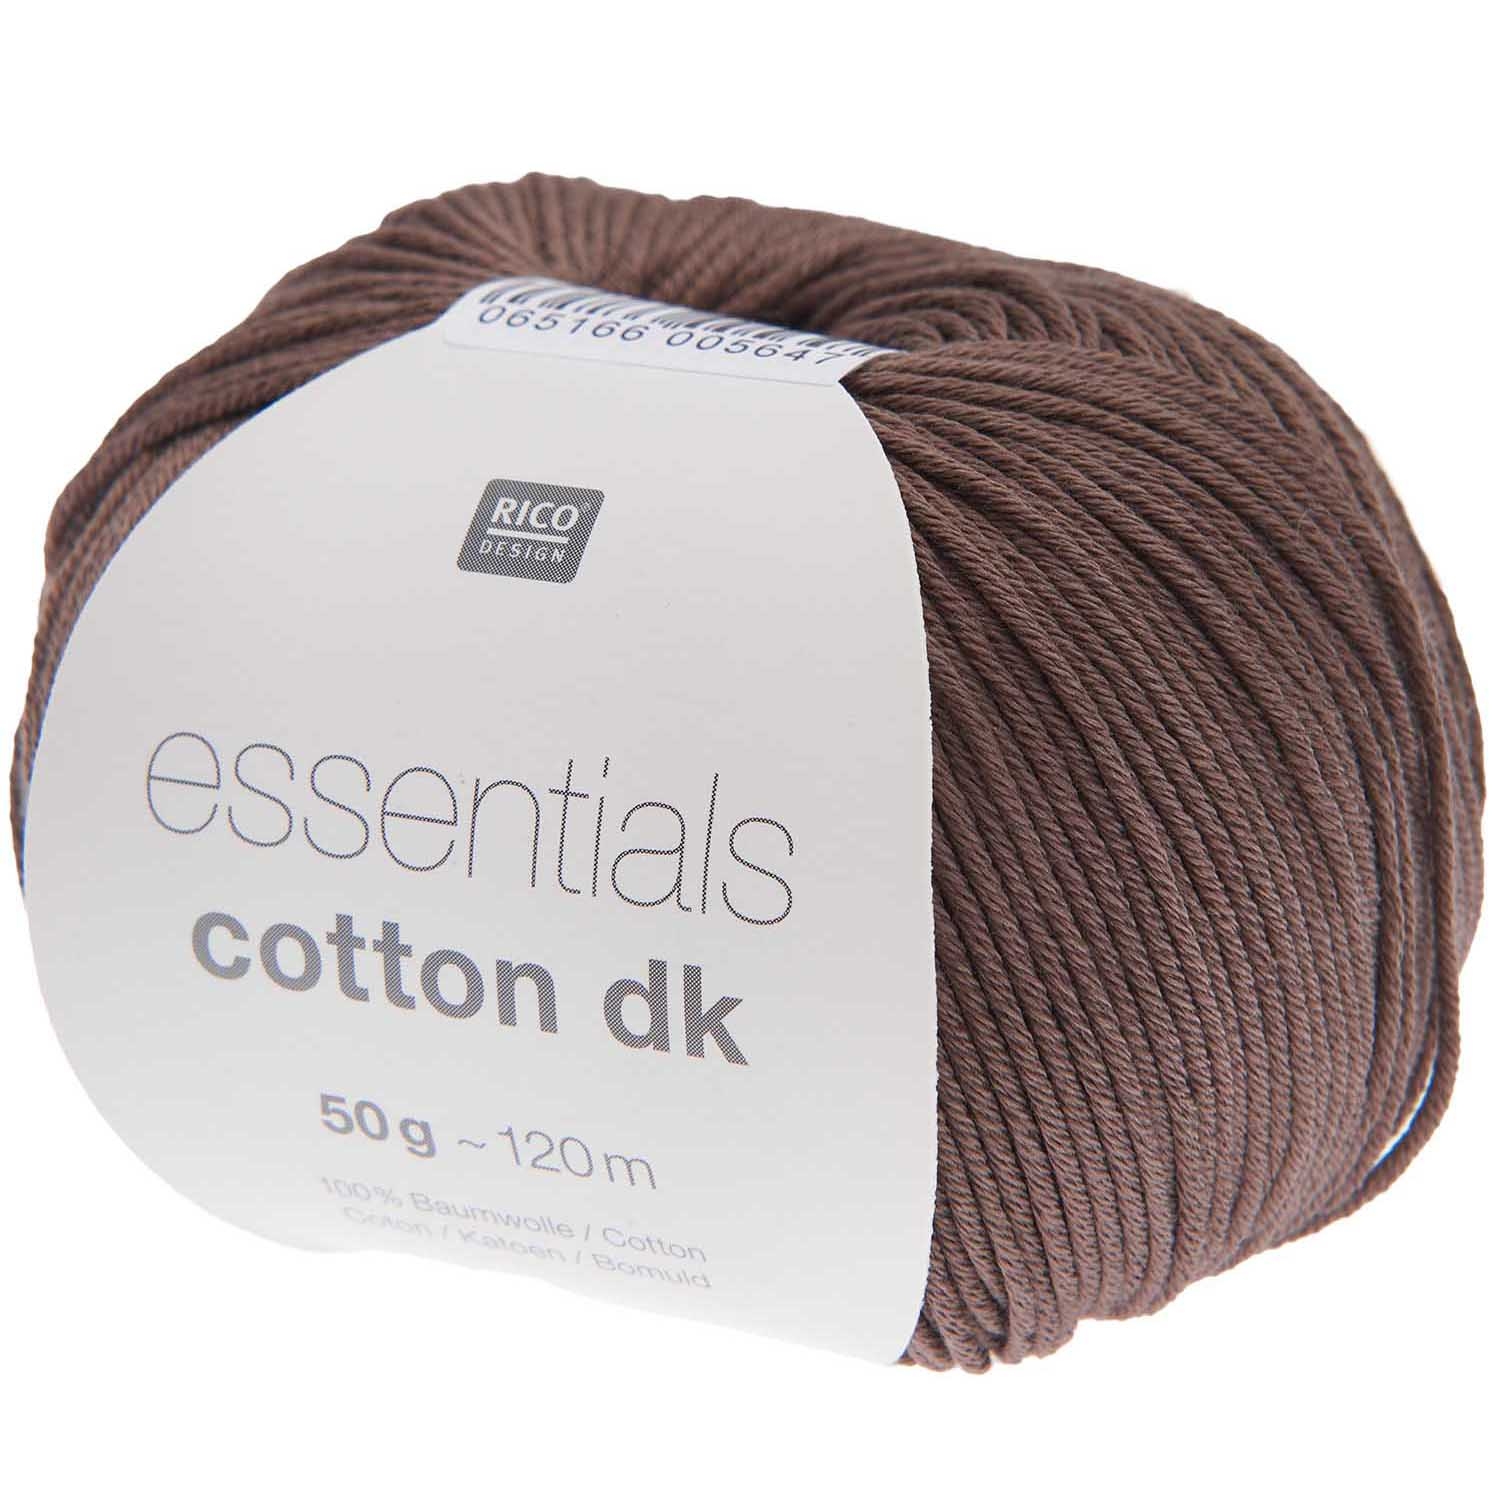 Rico Essentials Cotton DK, braun